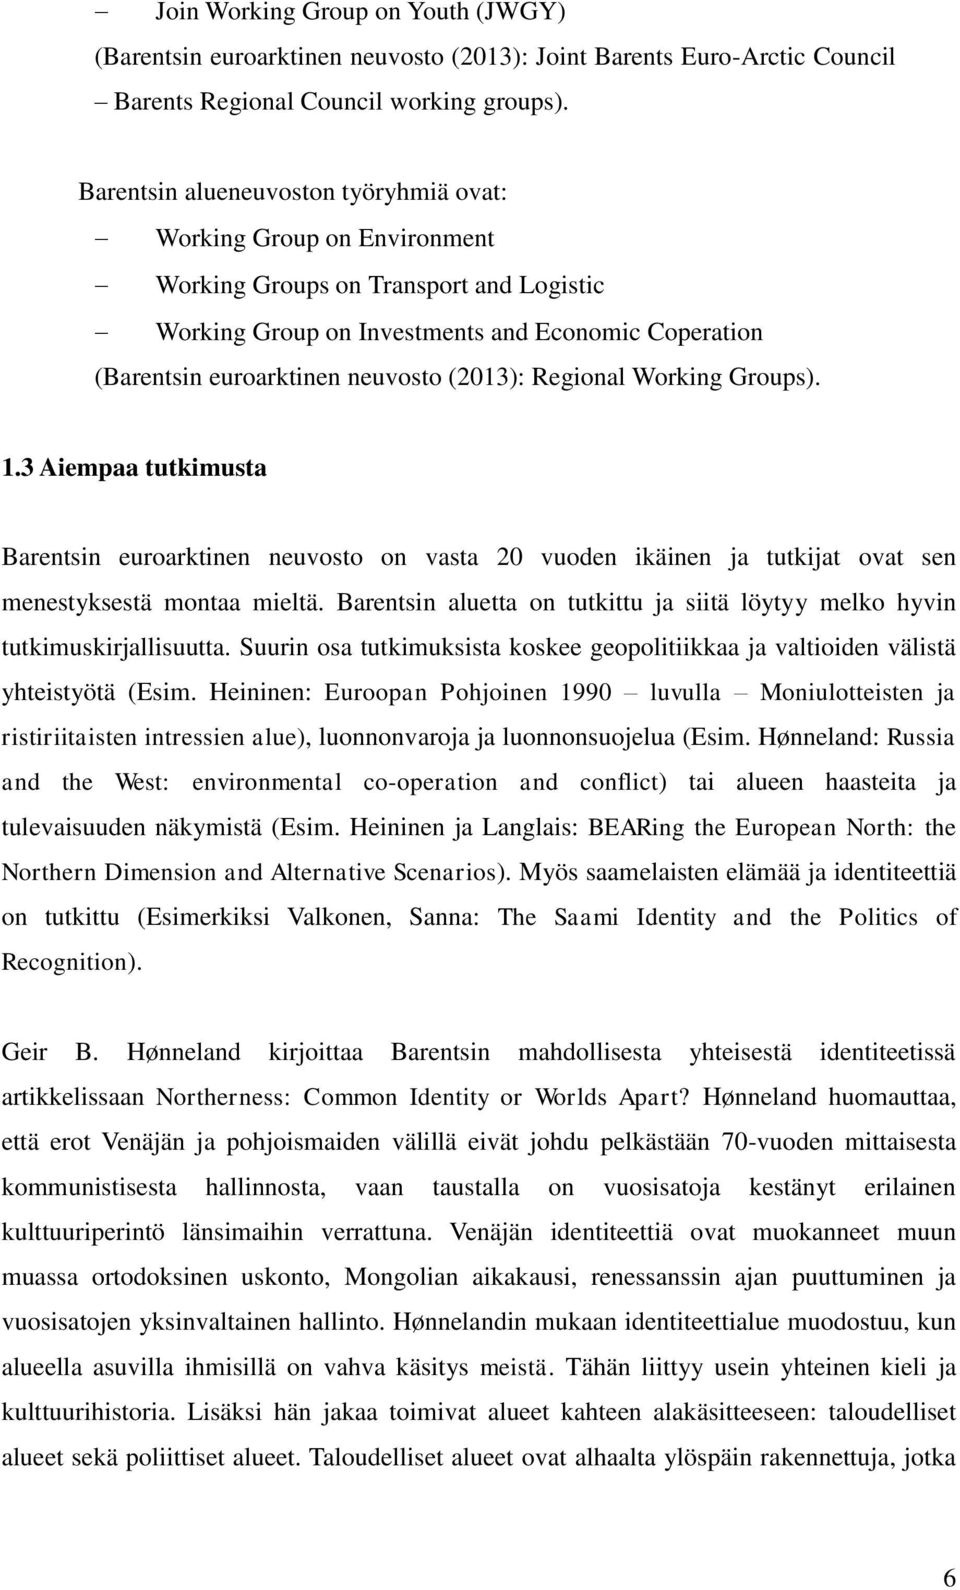 (2013): Regional Working Groups). 1.3 Aiempaa tutkimusta Barentsin euroarktinen neuvosto on vasta 20 vuoden ikäinen ja tutkijat ovat sen menestyksestä montaa mieltä.